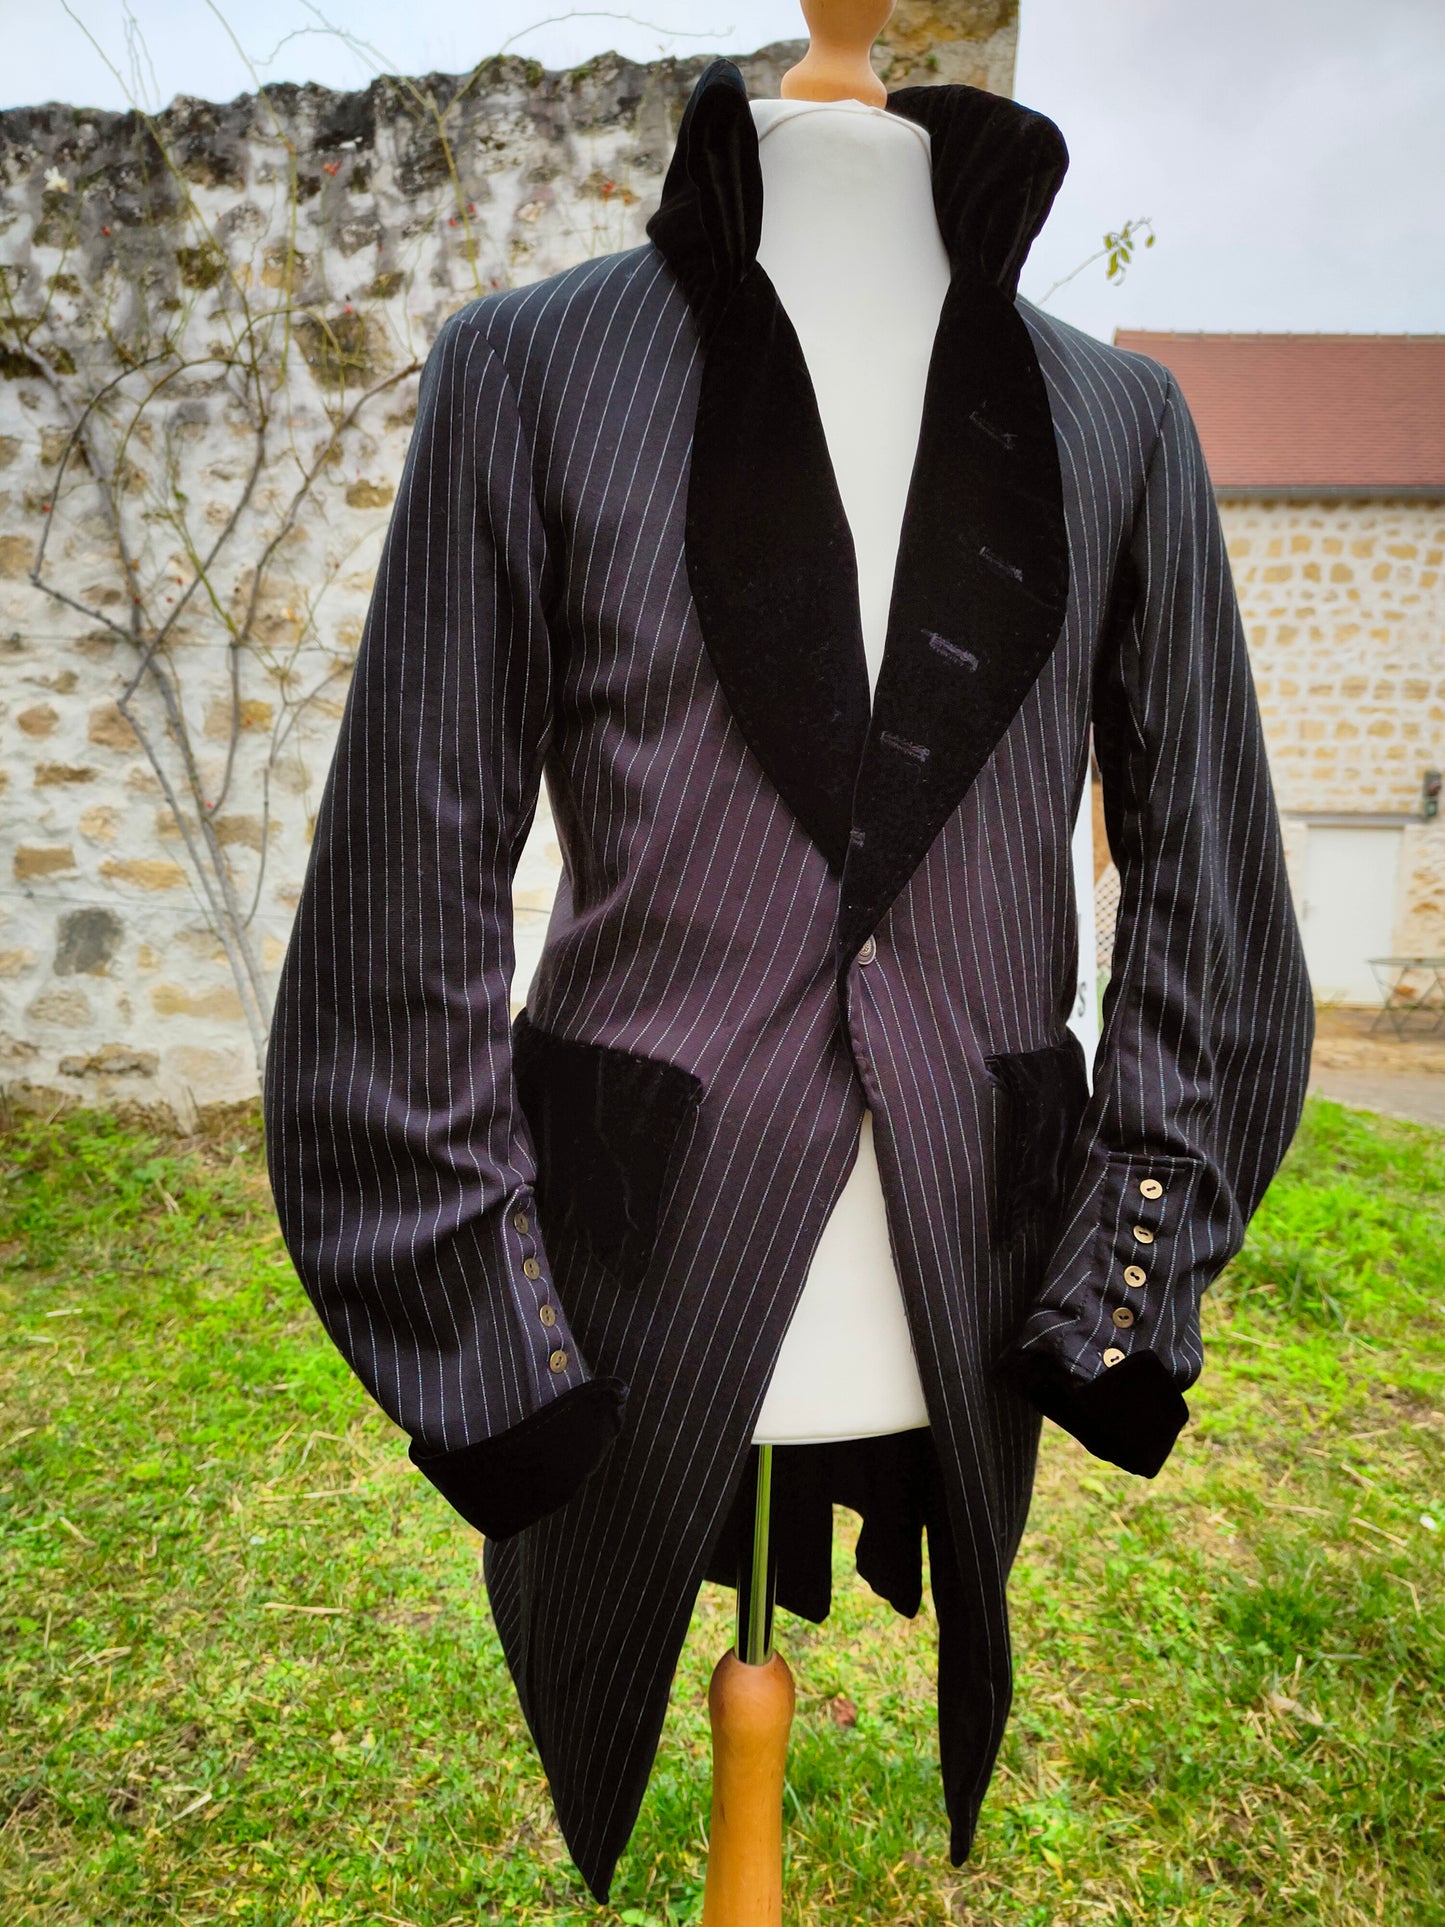 Veste de costume fin XVIII ème, noire, à fine rayures, frac.